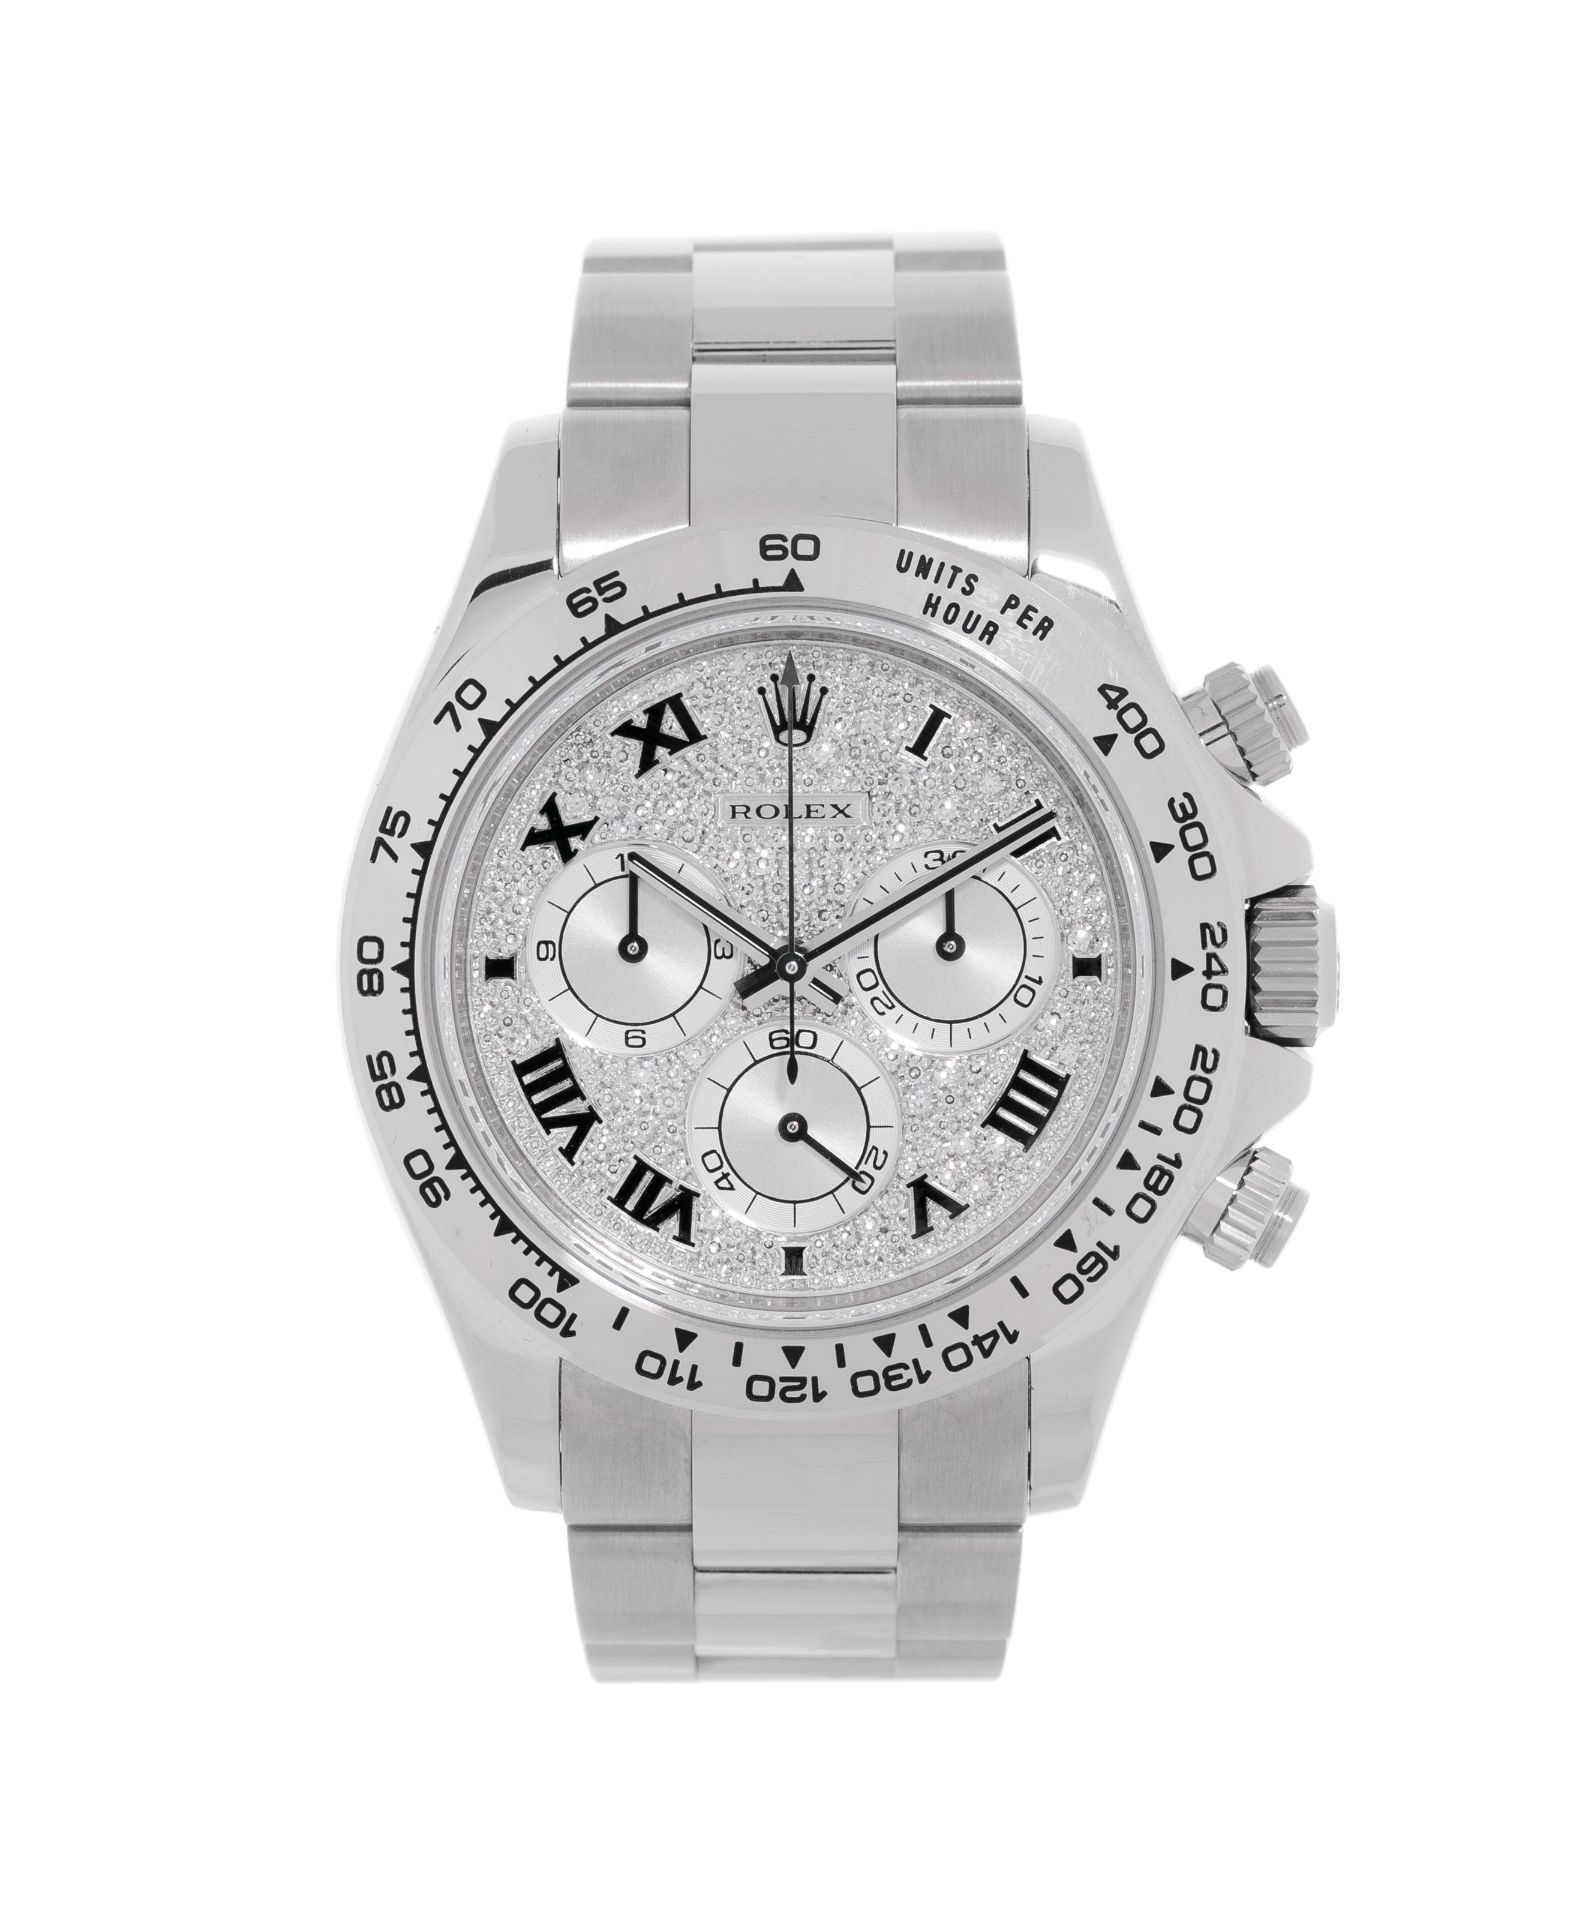 Rolex, Daytona, réf. 116589/2119, montre-bracelet chronographe en or gris 750 avec le cadran pavé de